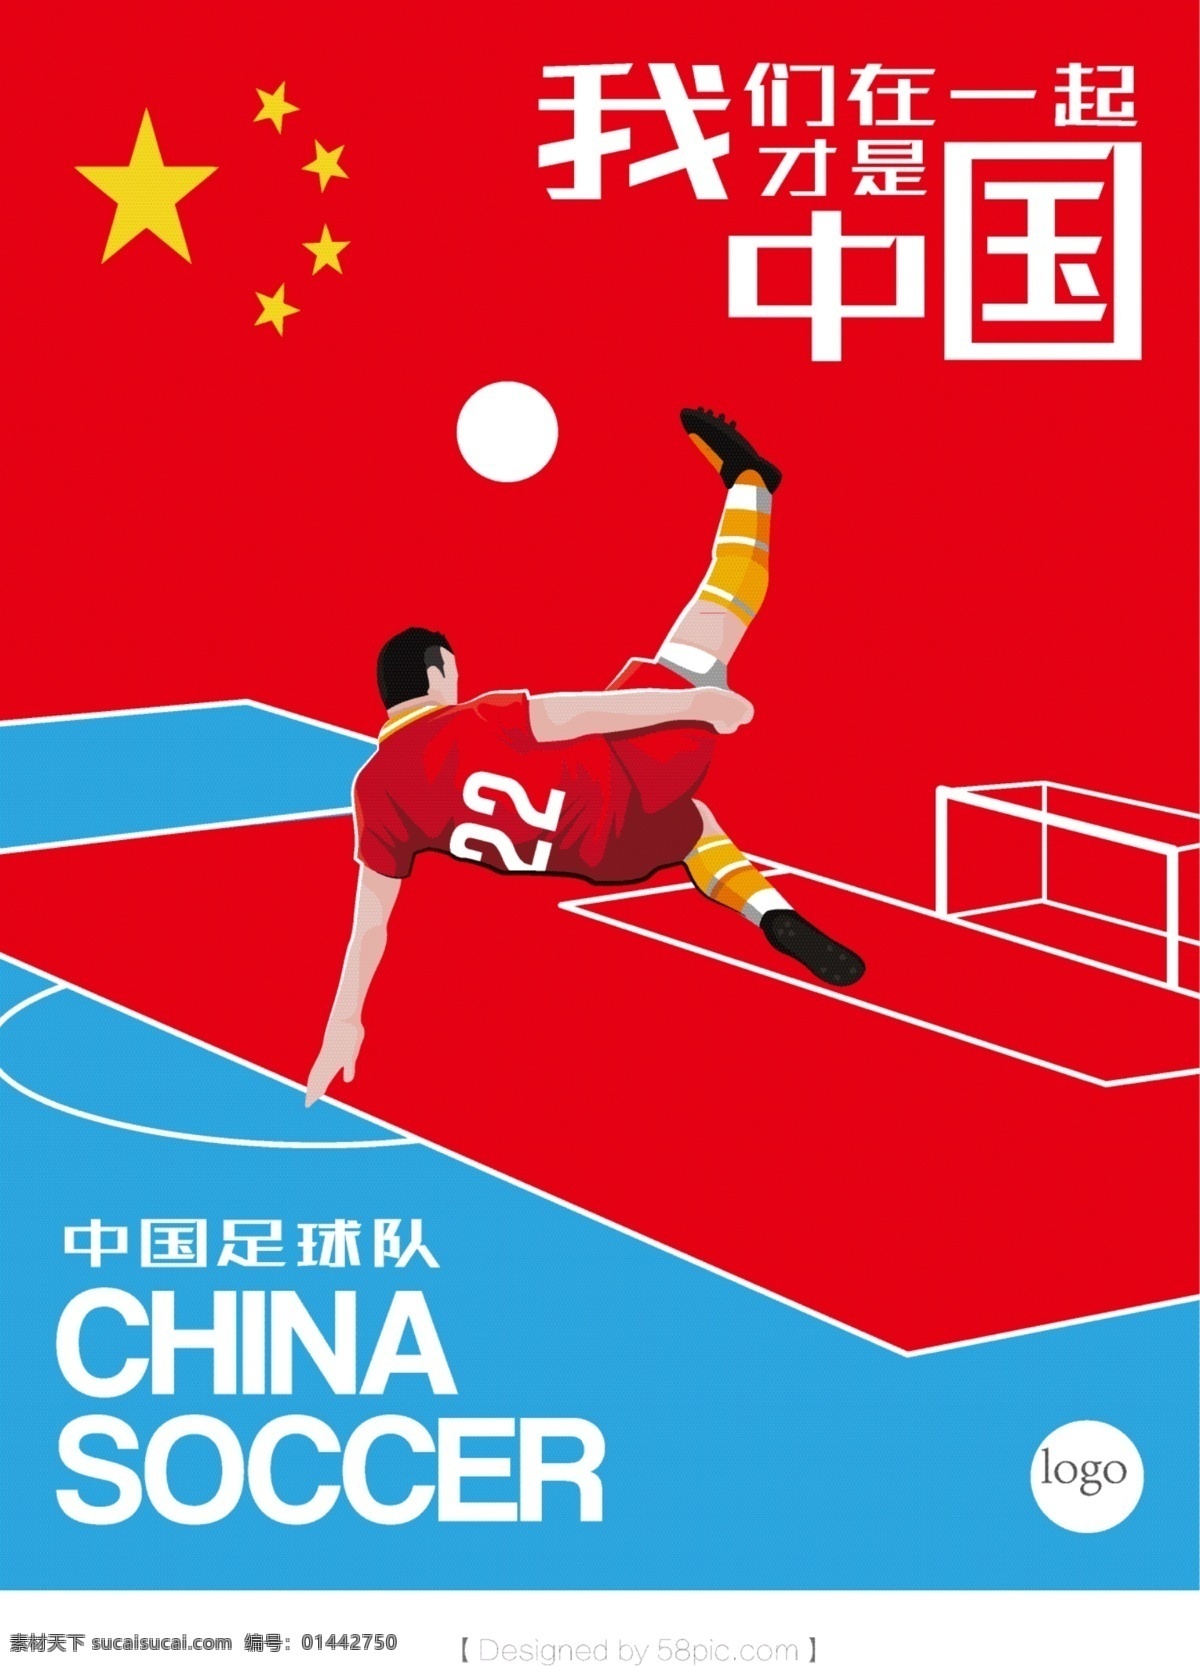 中国足球队 体育海报 体育素材 中国足球 足球海报 足球素材 中国红